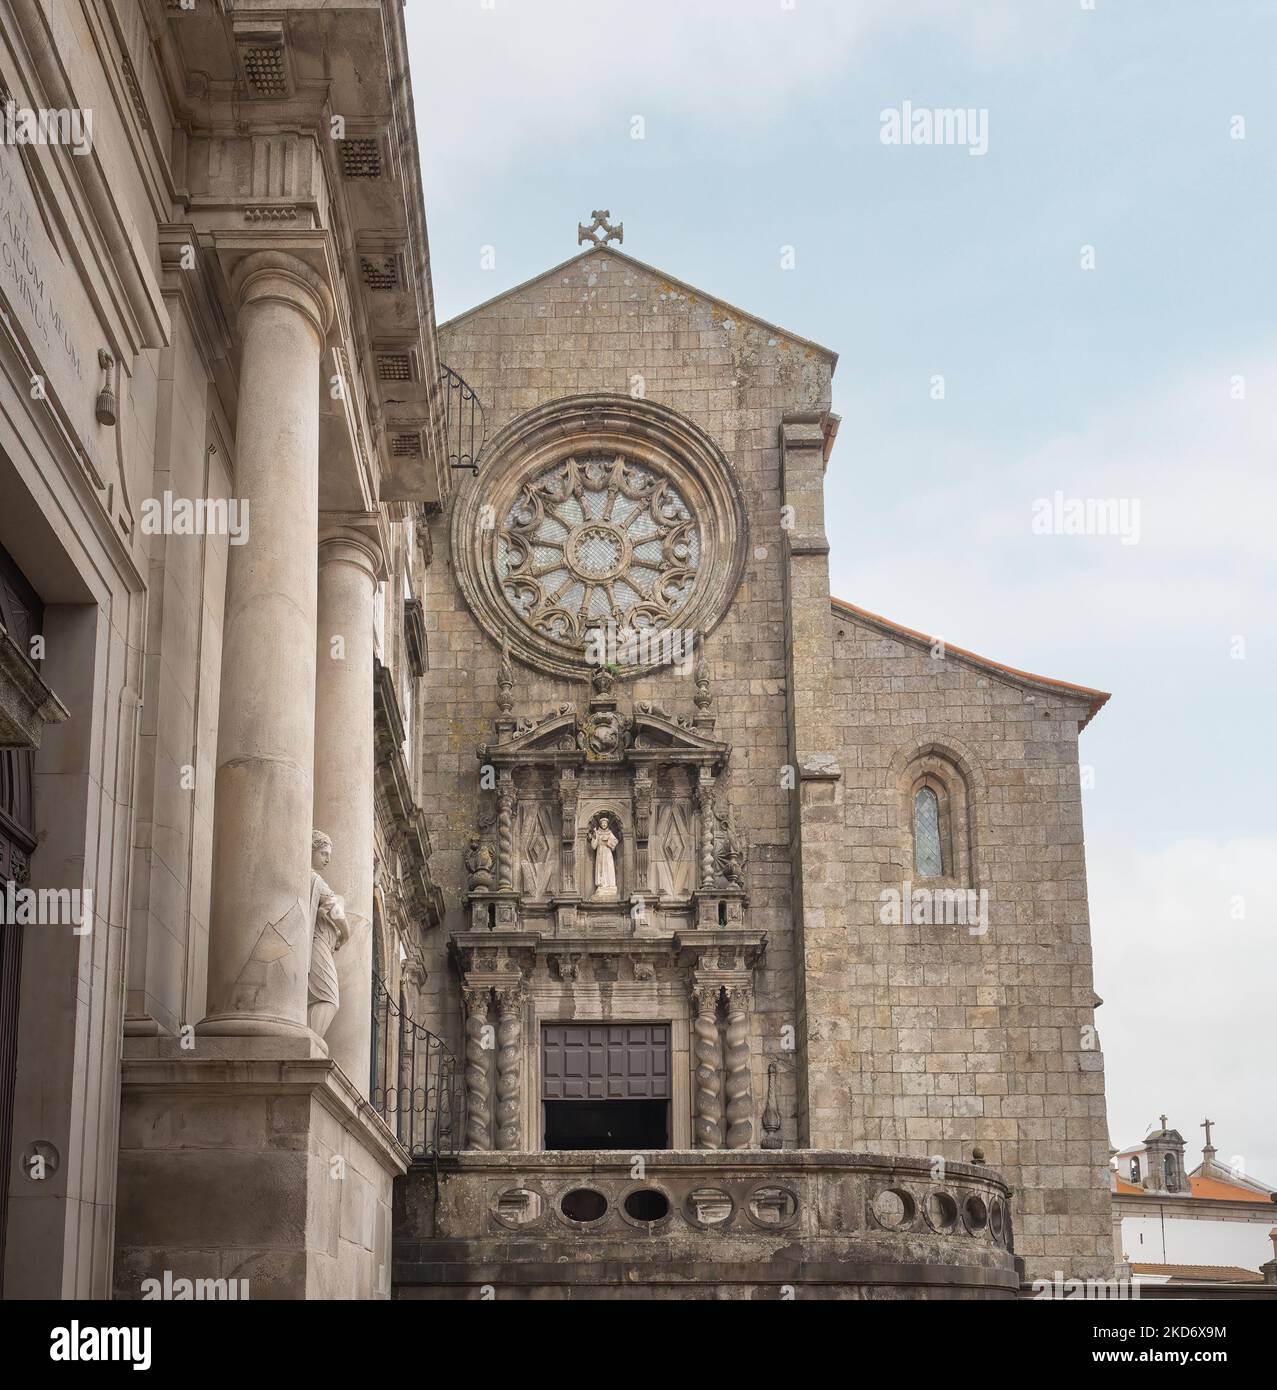 Église de Sao Francisco (Église de Saint François) - Porto, Portugal Banque D'Images